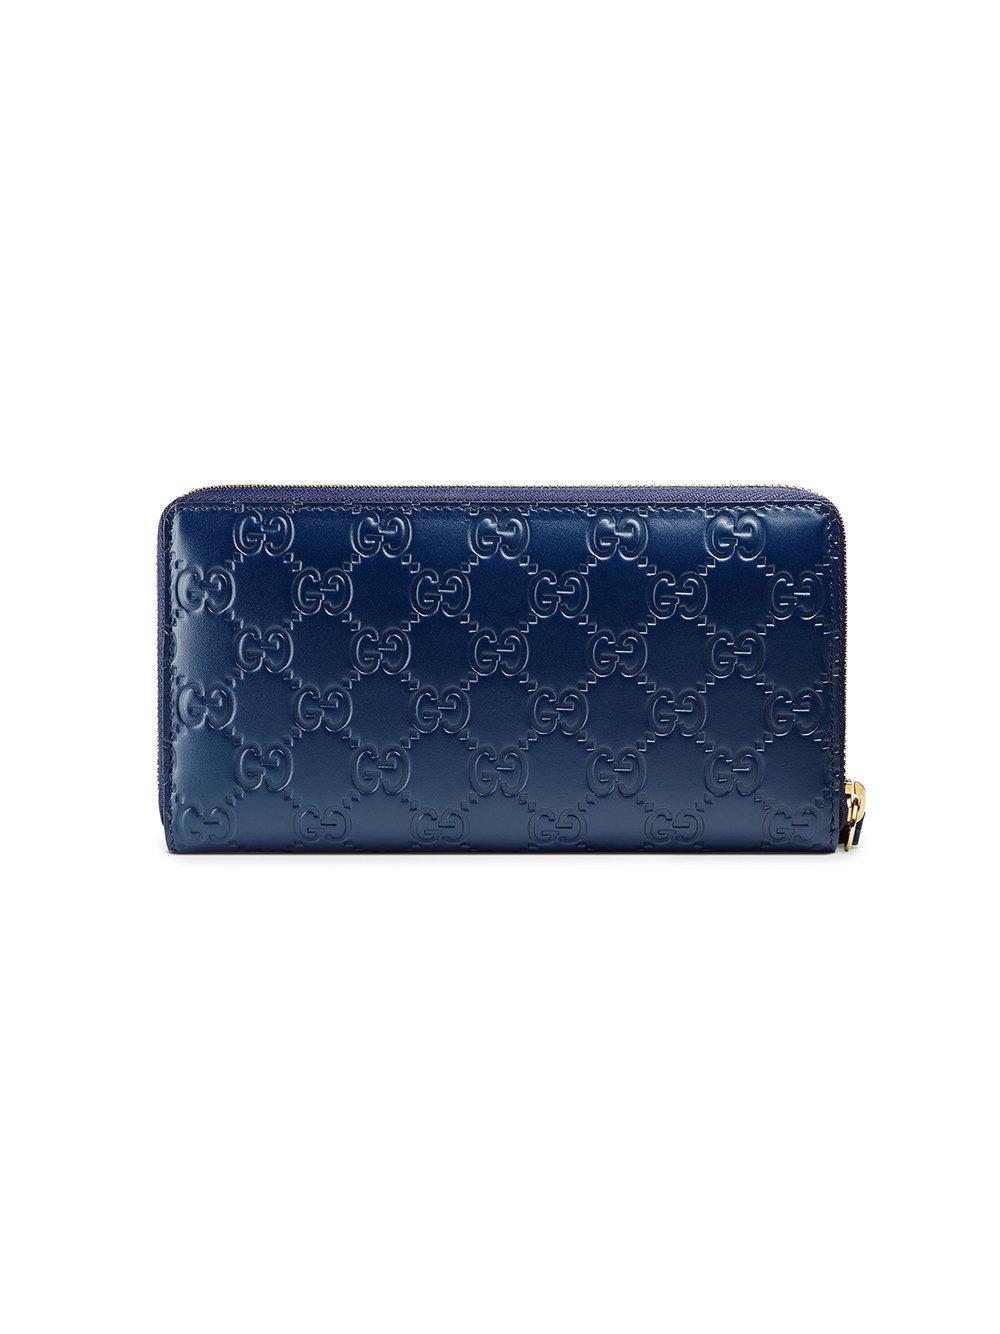 Gucci Leather Signature Zip Around Wallet in Dark Blue (Blue) - Lyst